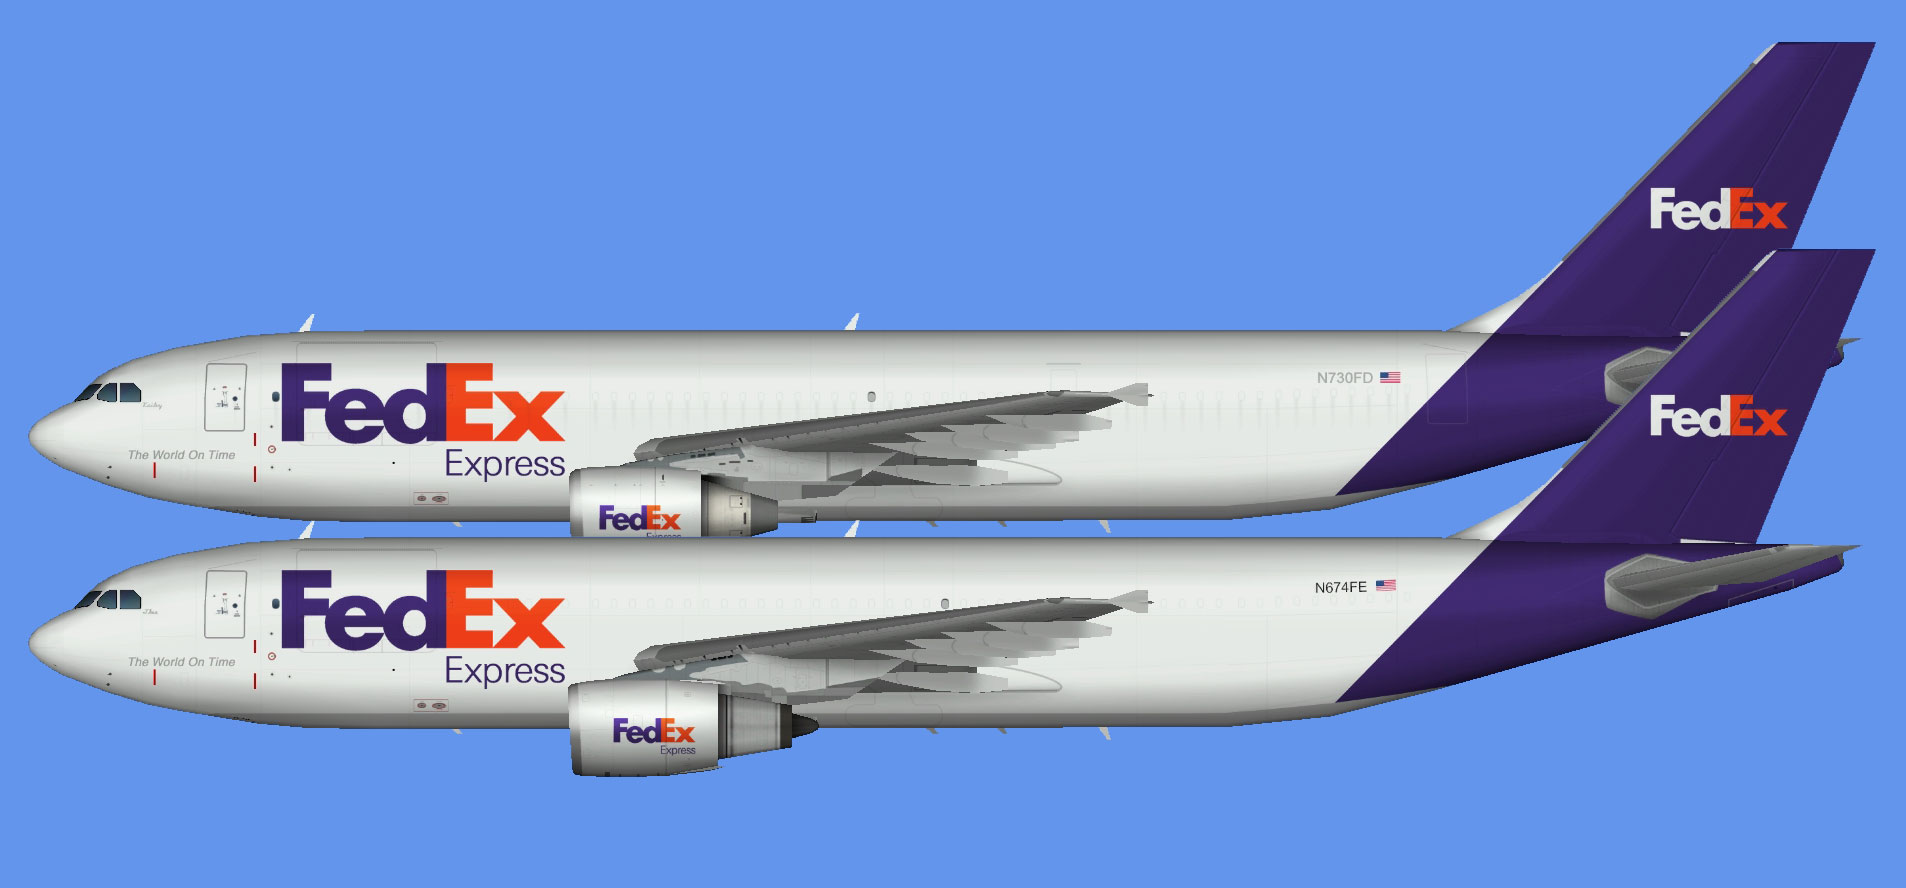 Fedex Express A300-600F